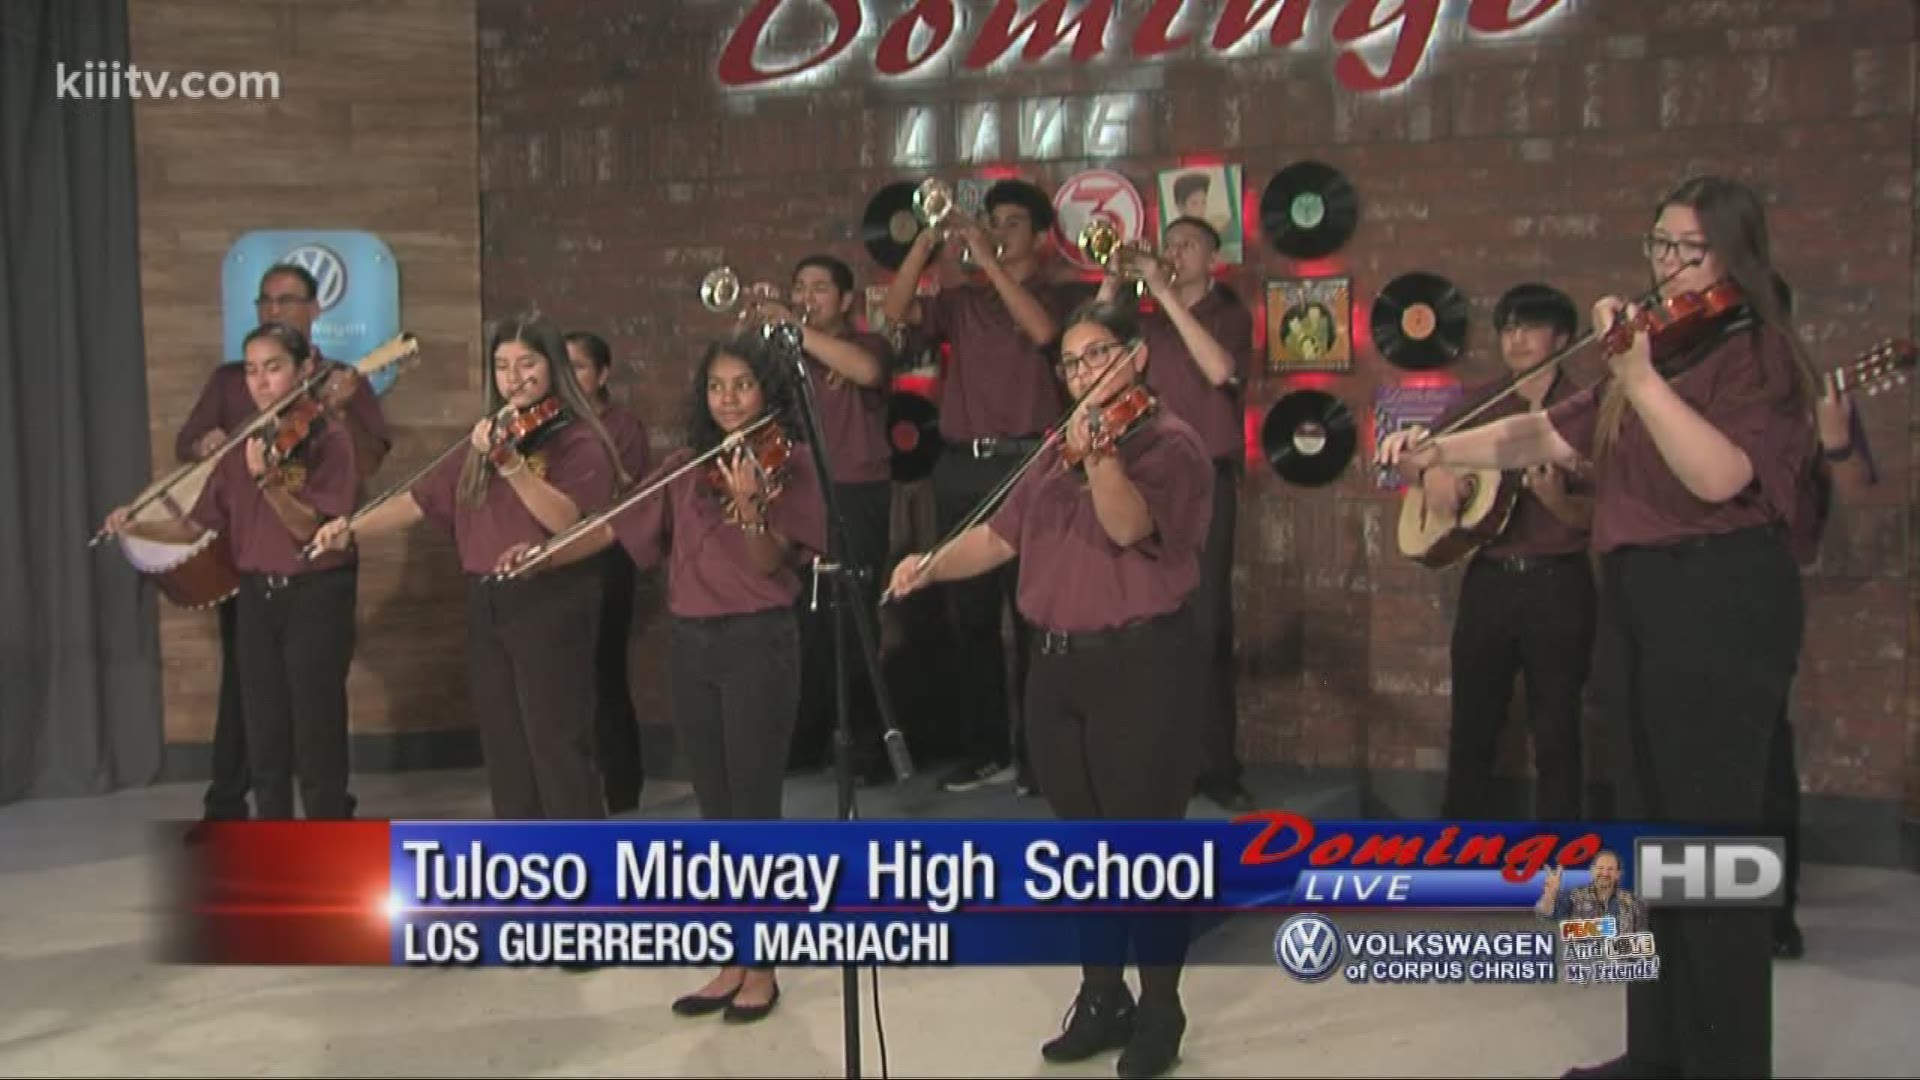 Tuloso Midway High School Mariachi performing "El Garabato" on Domingo Live.